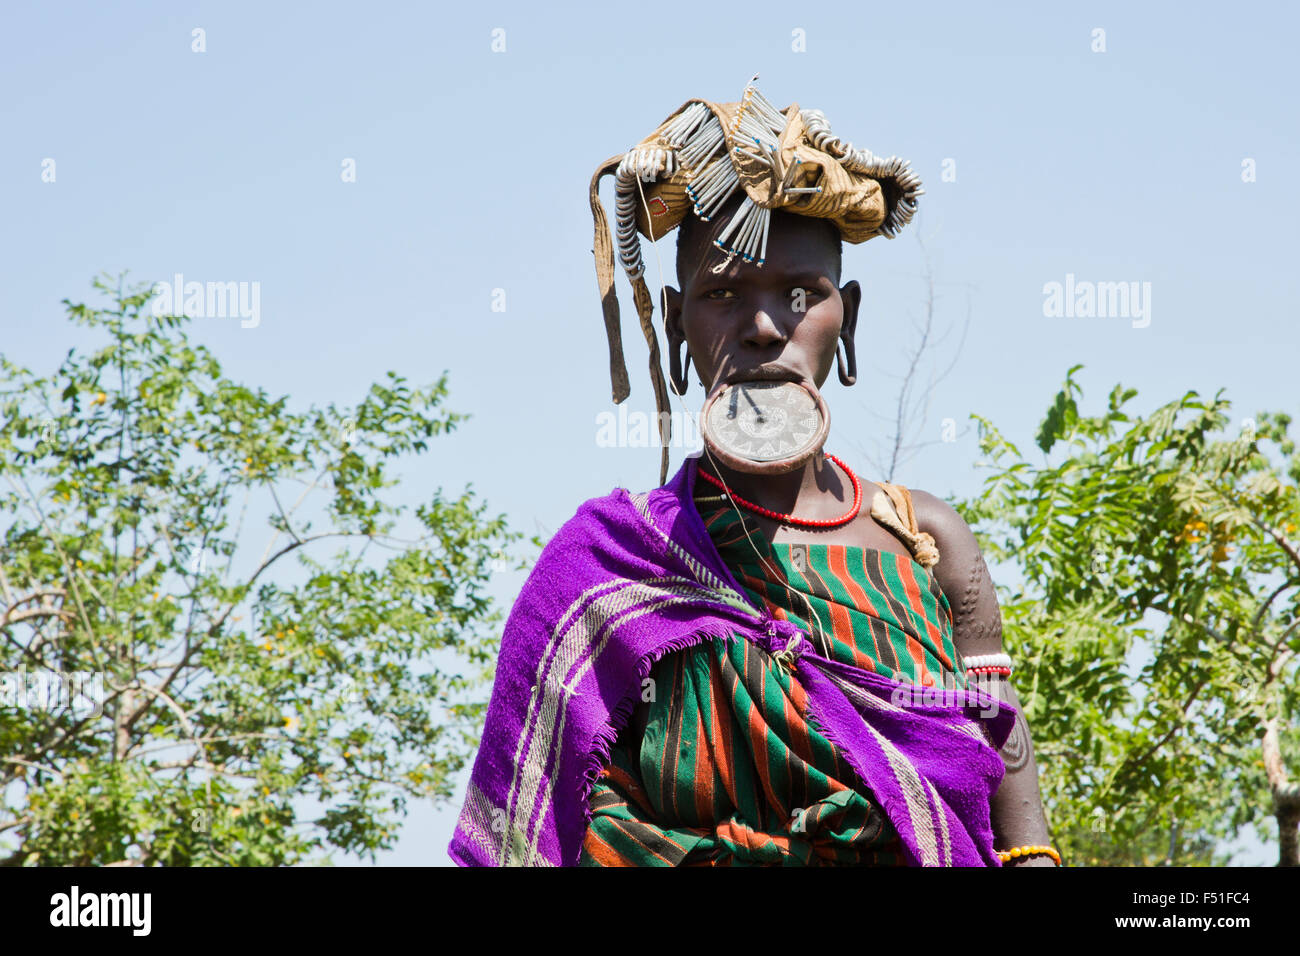 Femme de la tribu Mursi avec de l'argile comme ornamentstribe disque lèvre corps Debub Zone d'Omo, en Ethiopie. Près de la frontière soudanaise. Banque D'Images